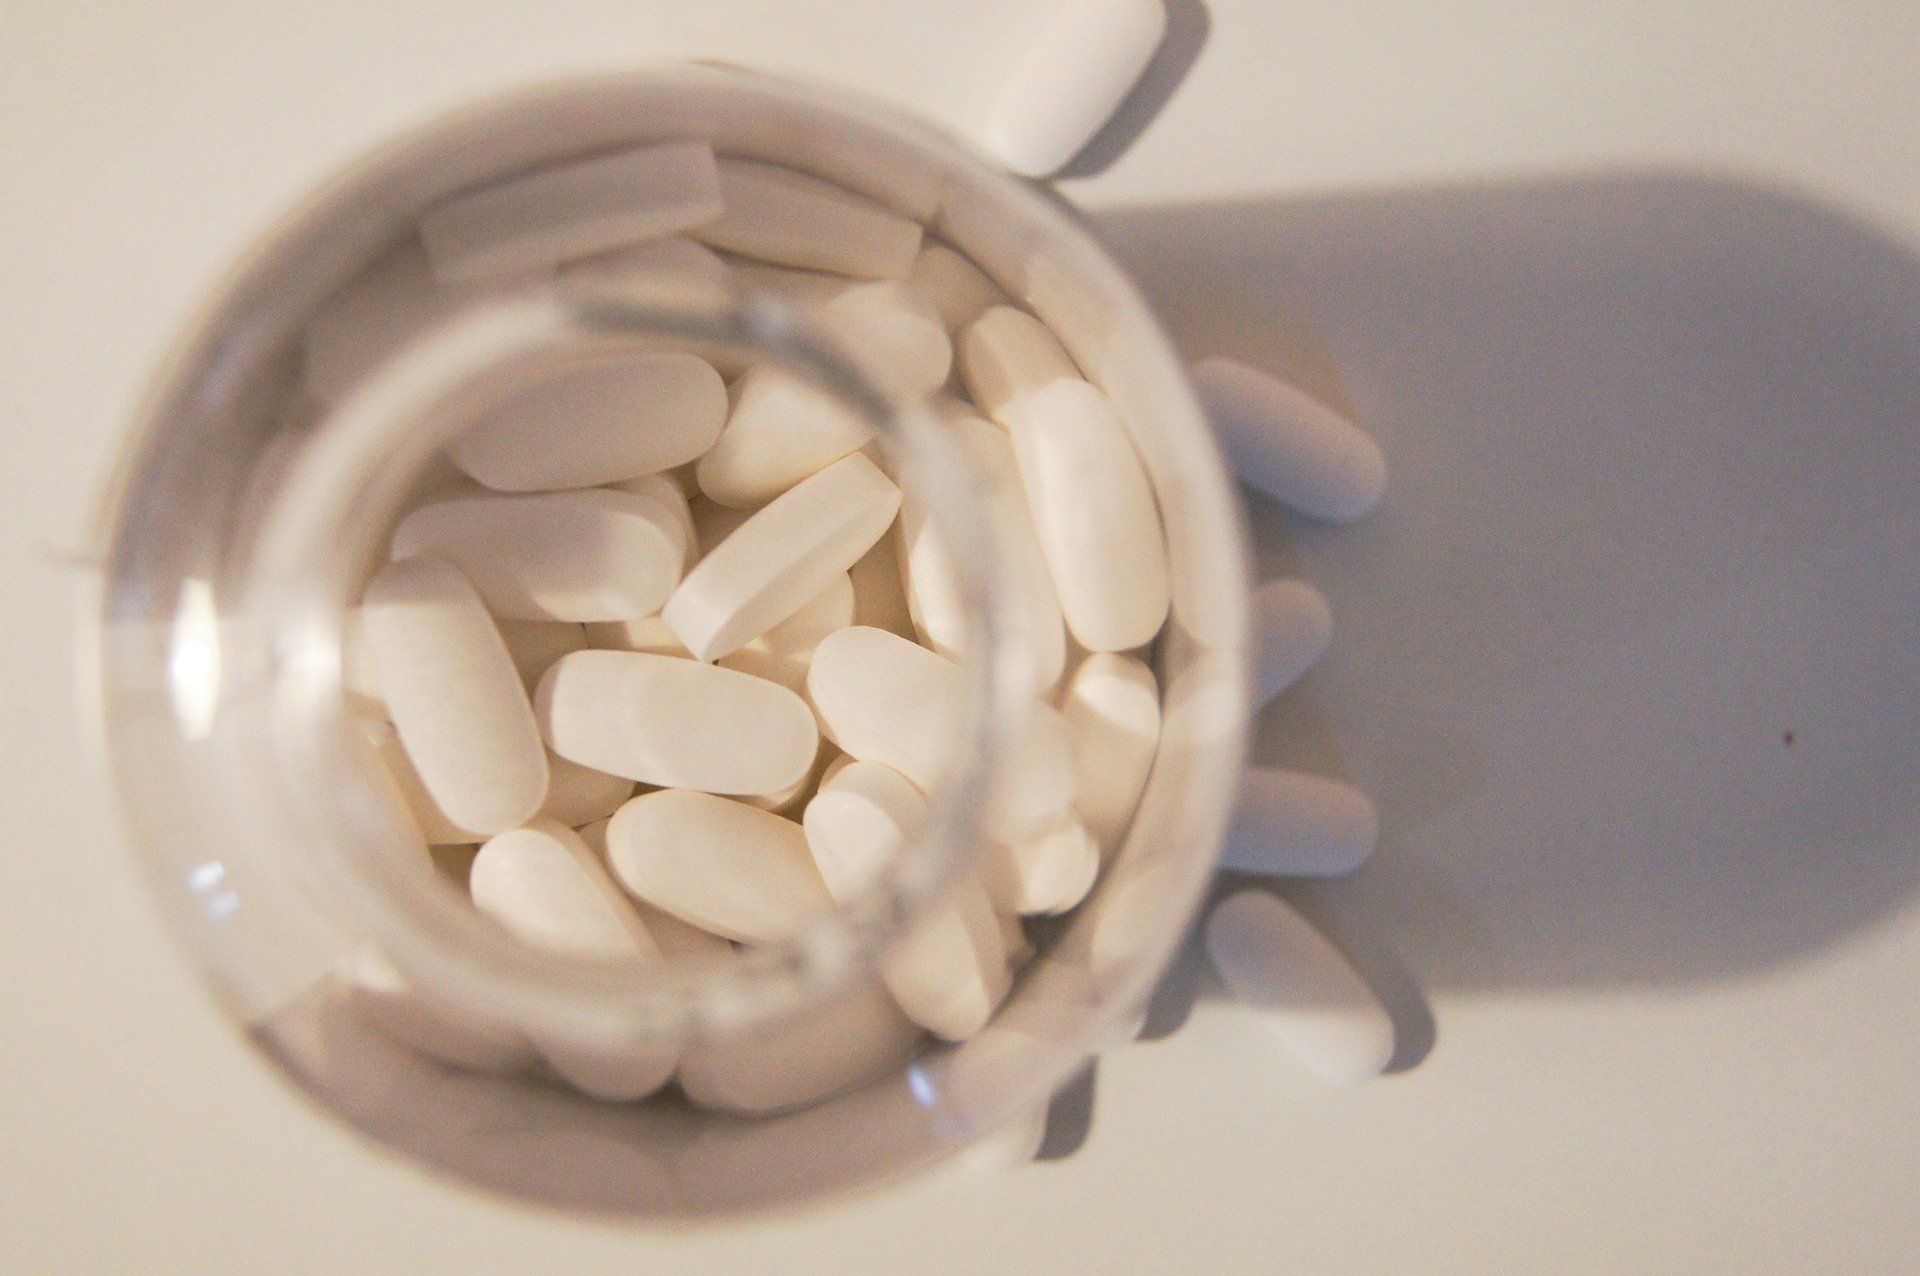 Αντισυλληπτικό χάπι χωρίς συνταγή για πρώτη φορά στις ΗΠΑ